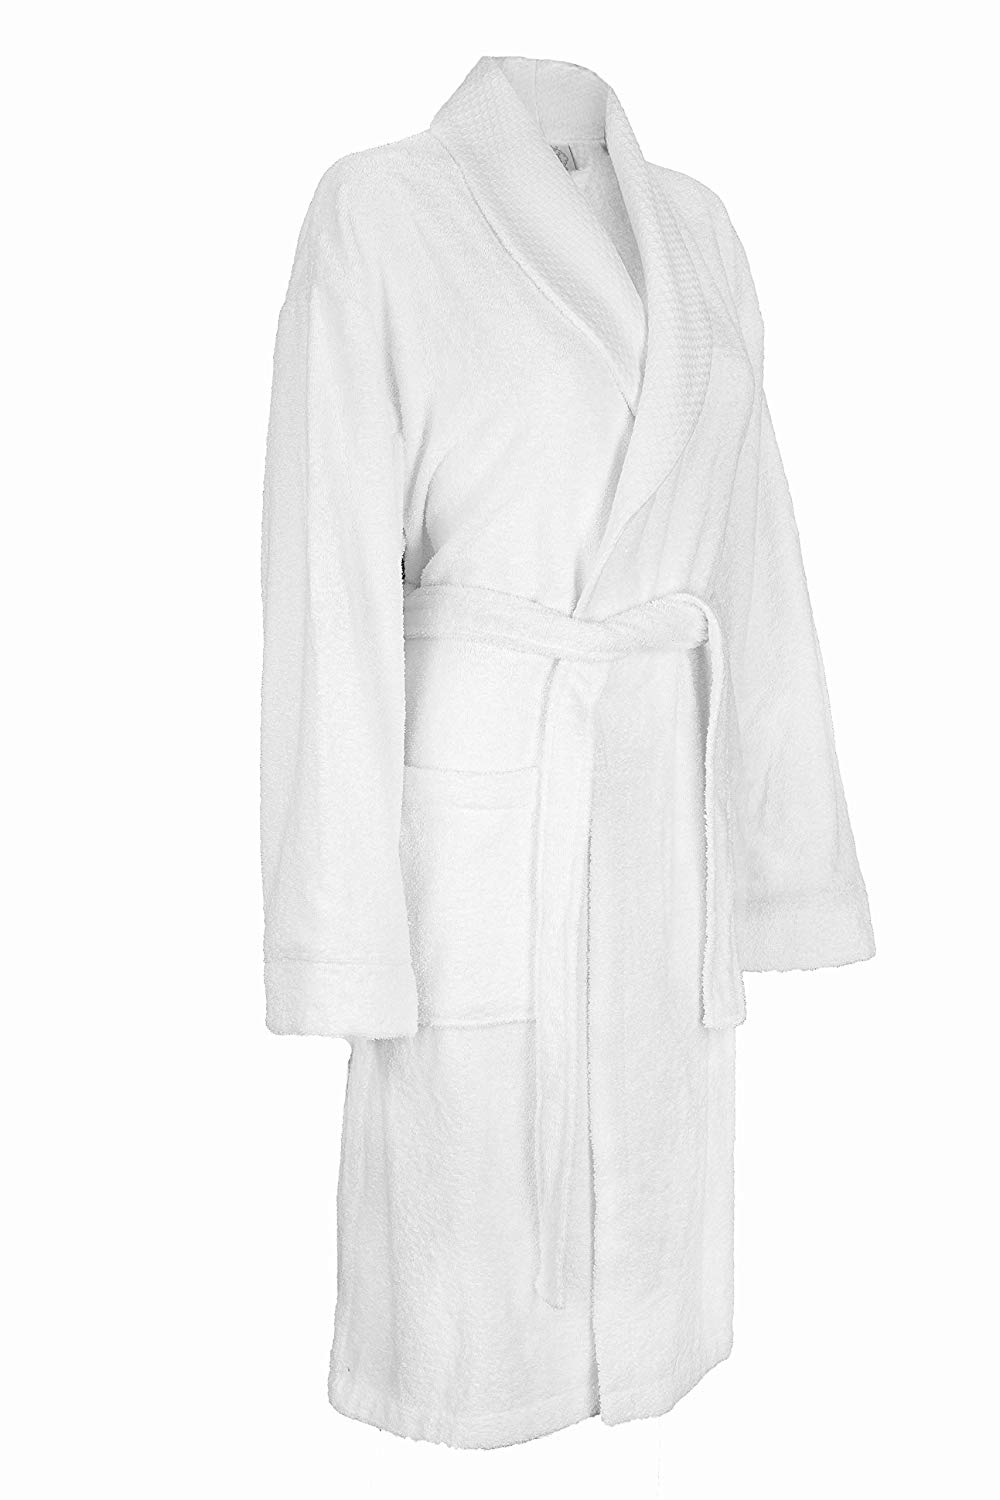 高端设计柔软舒适男女通用酒店浴袍